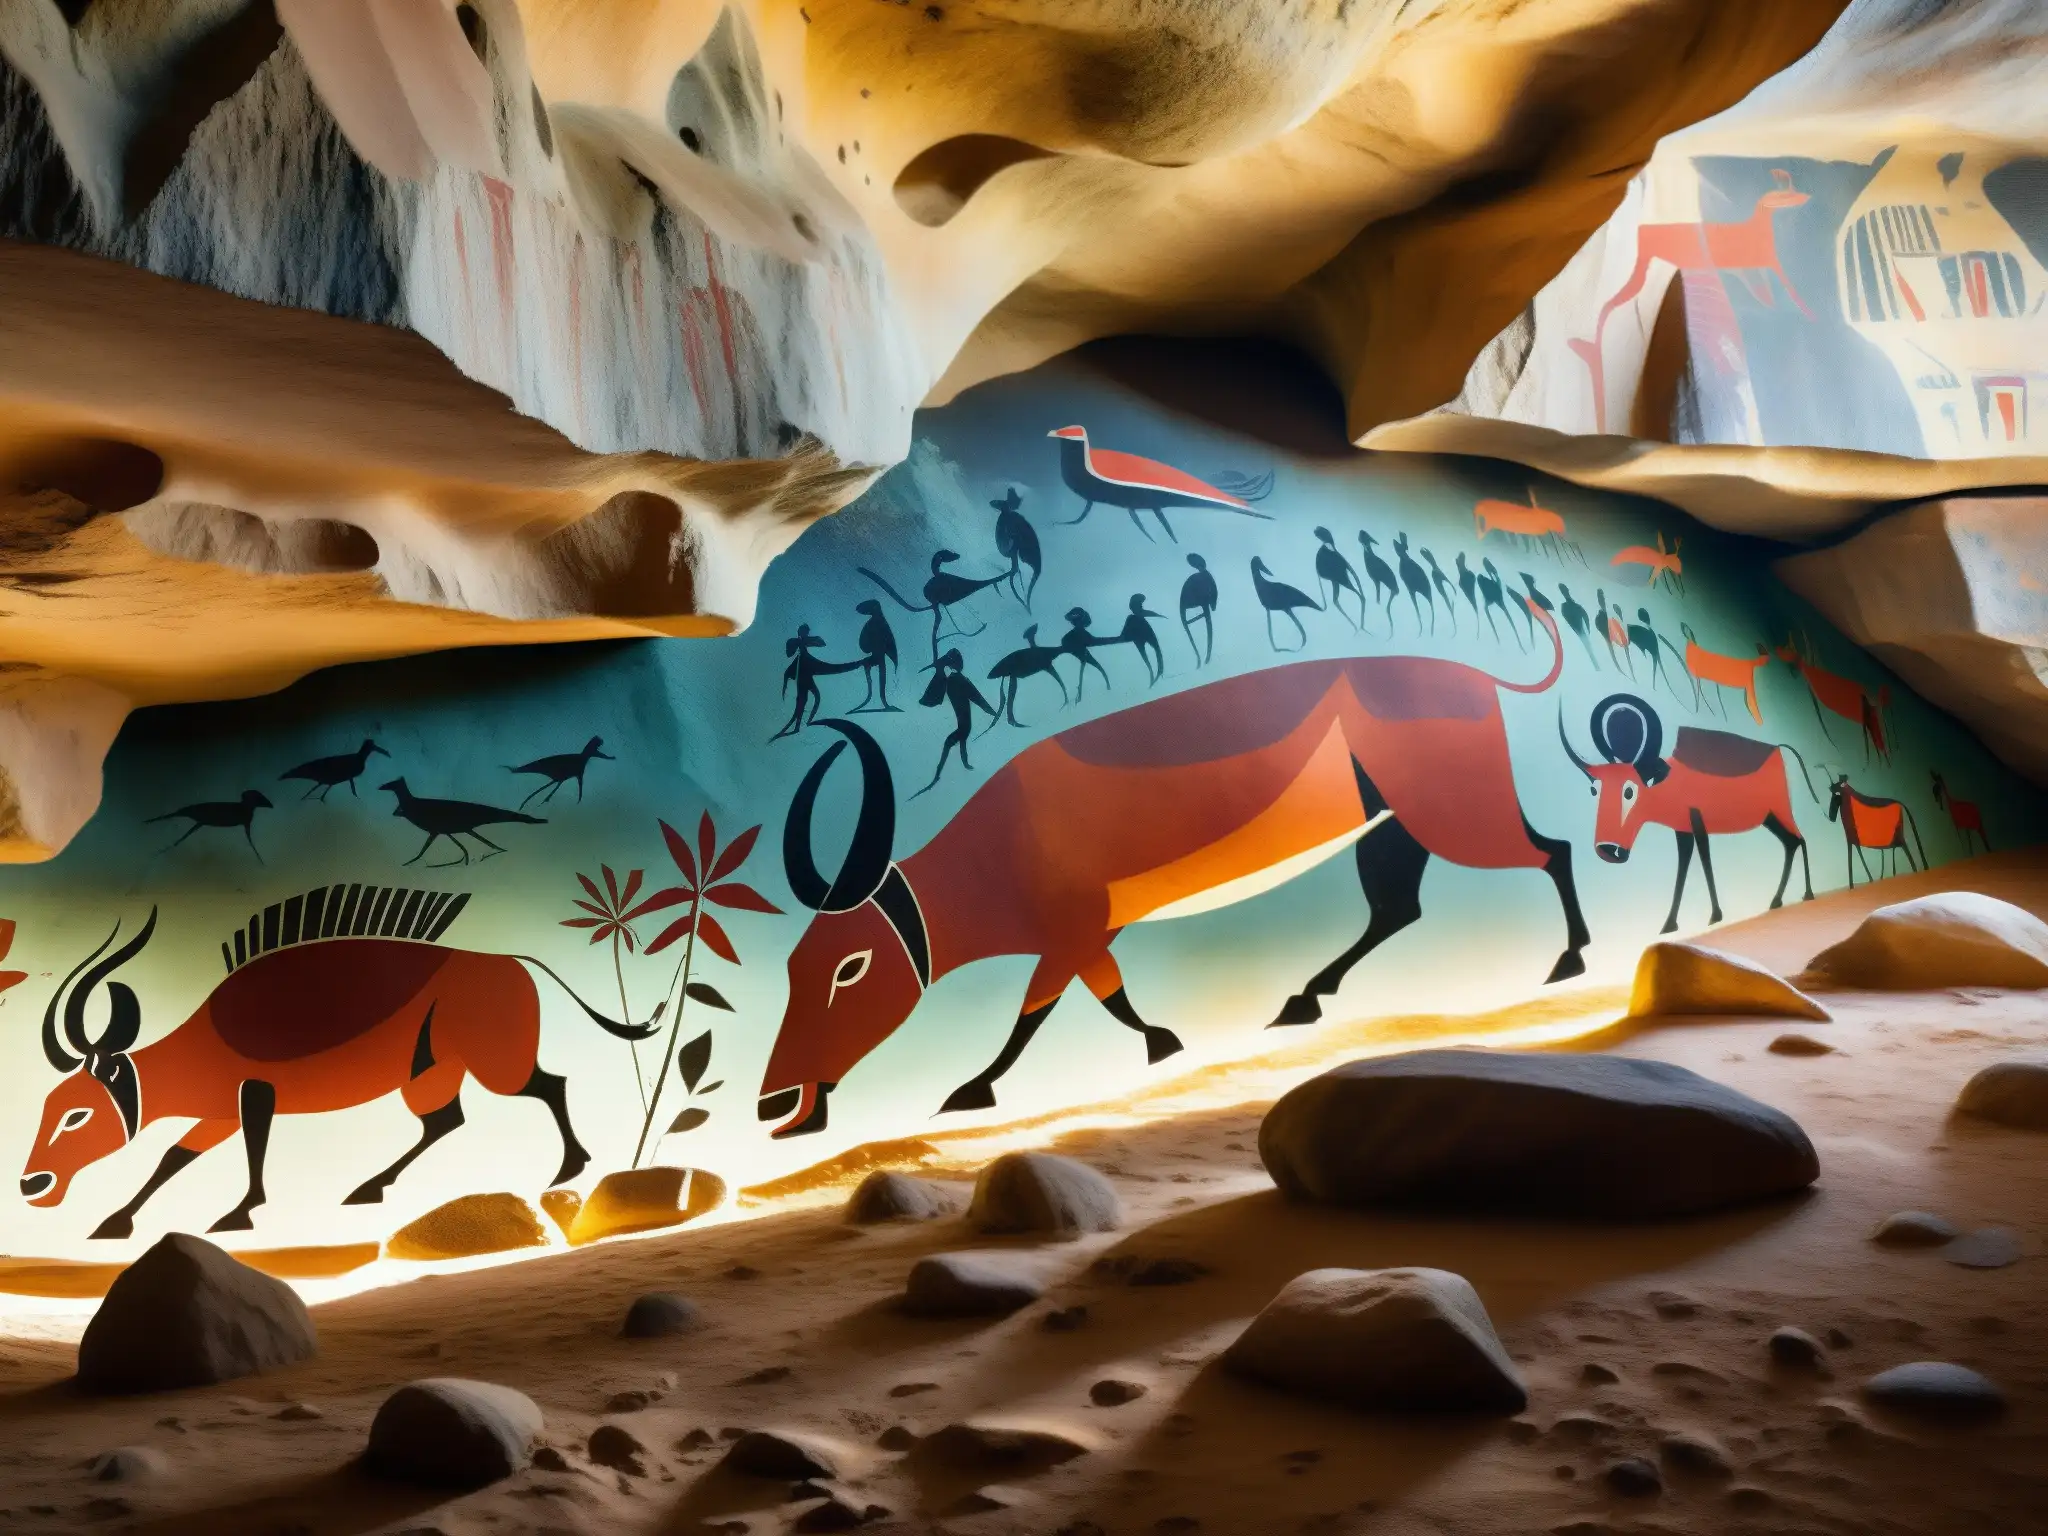 Vibrantes pinturas rupestres en La Cueva de la Pileta, mostrando colores, texturas y juego de luces en obras prehistóricas